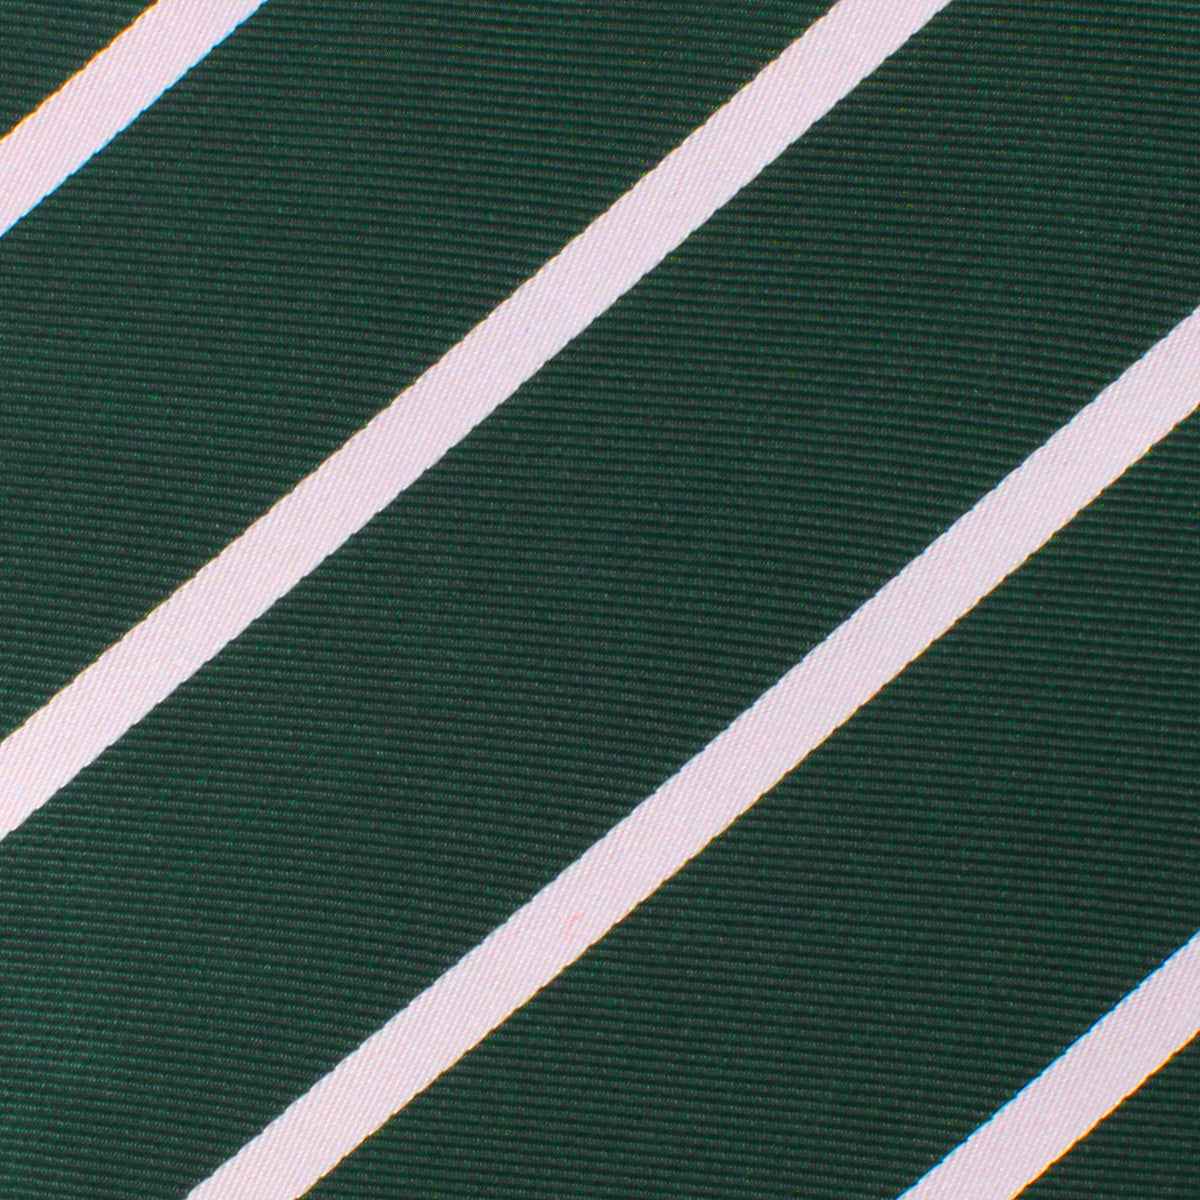 Forest Green Striped Necktie Fabric